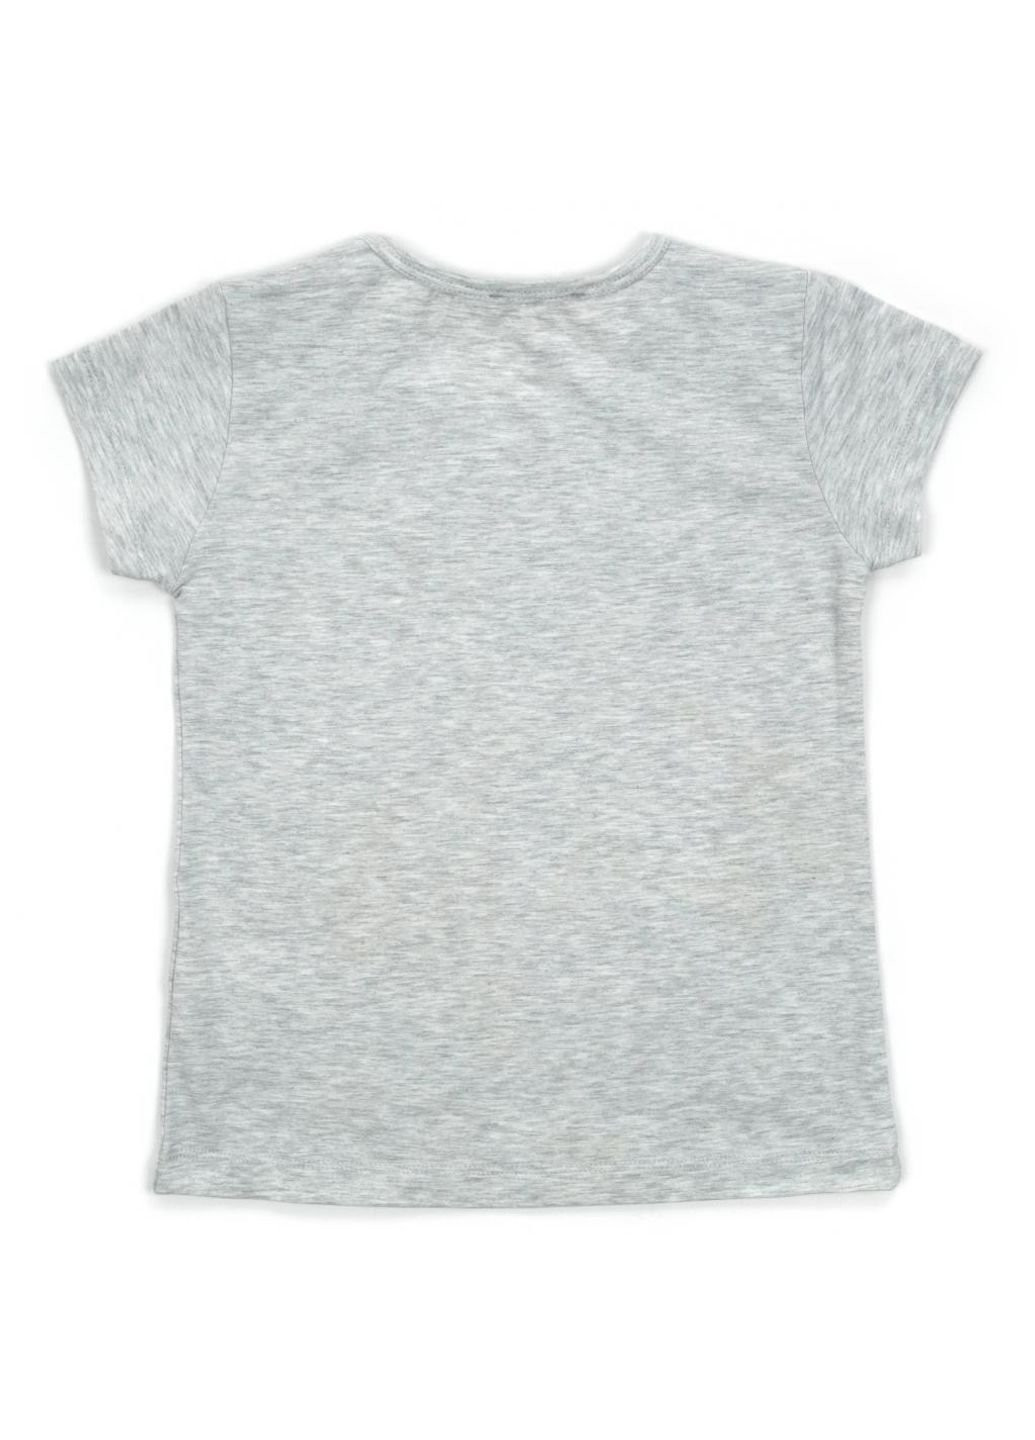 Світло-сіра демісезонна футболка дитяча з паєтками (14300-134g-gray) Breeze